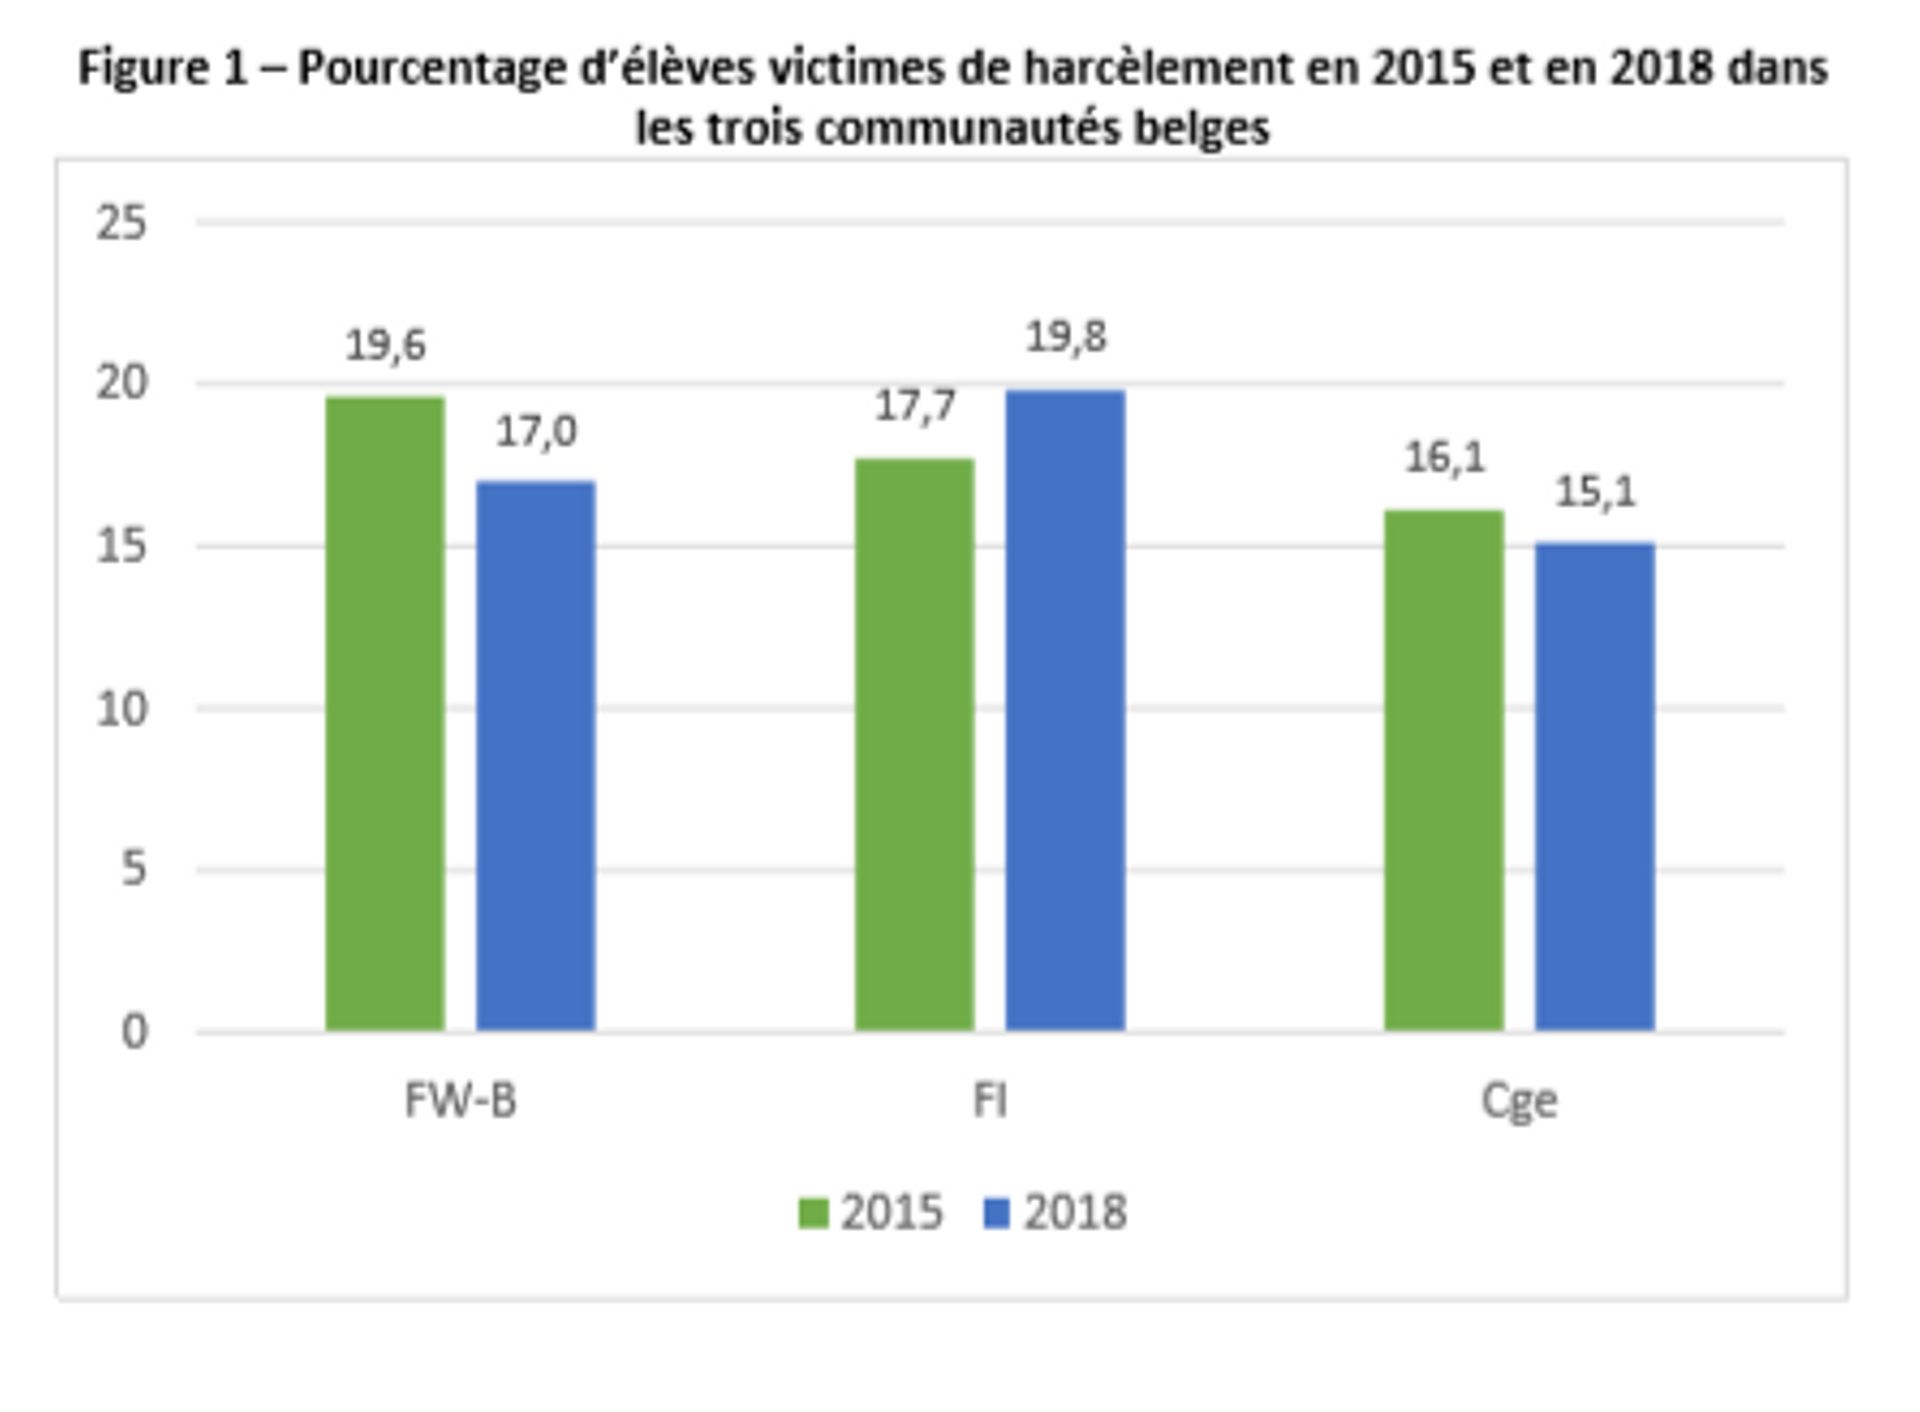 Le nombre d’élèves francophones qui se disent harcelés est en diminution 